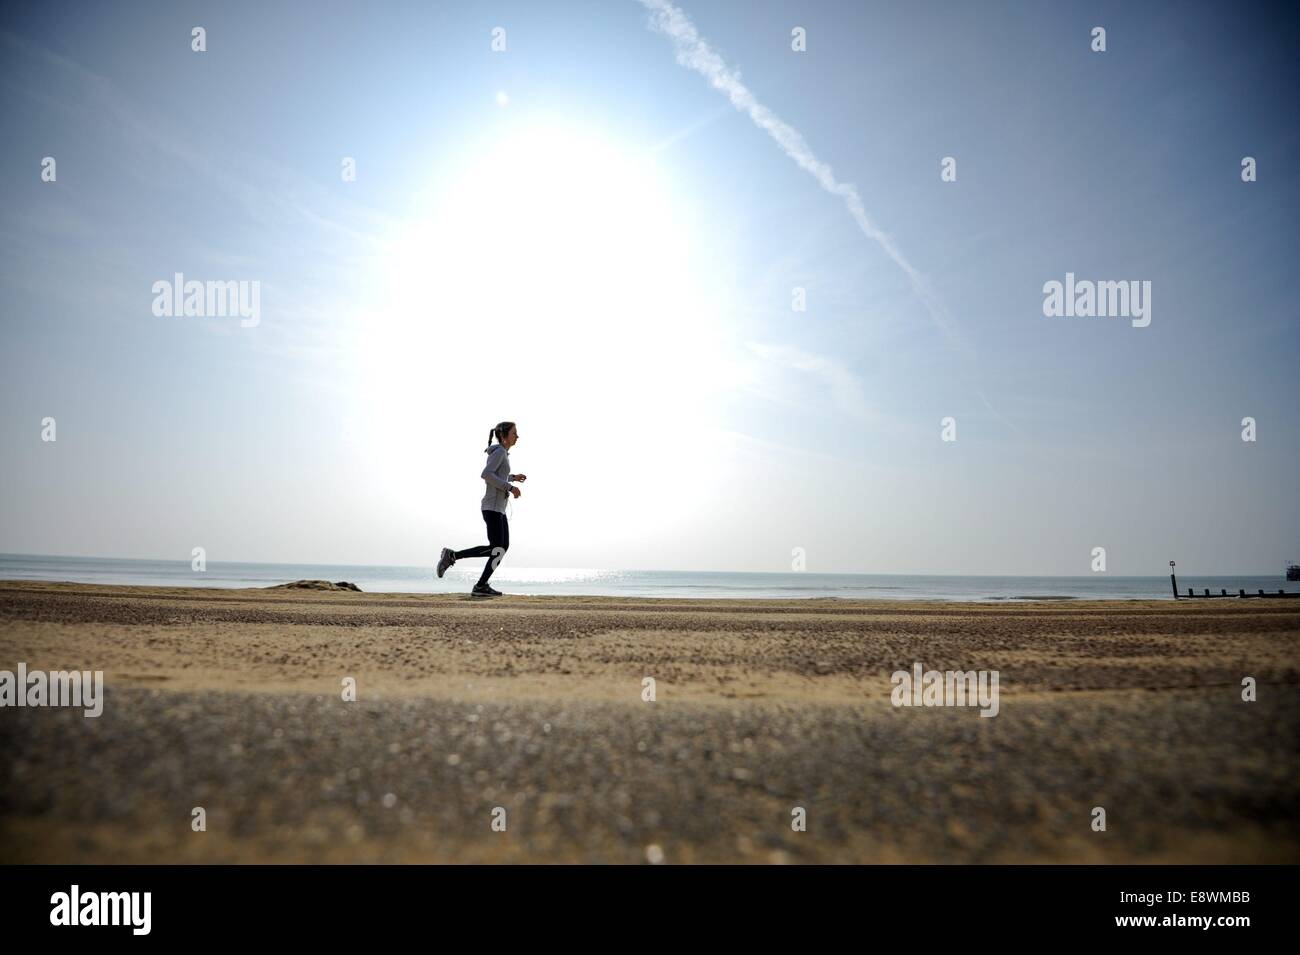 Eine Frau sieht man an der Strandpromenade in Bournemouth, England am 12. März 2014 laufen. Stockfoto